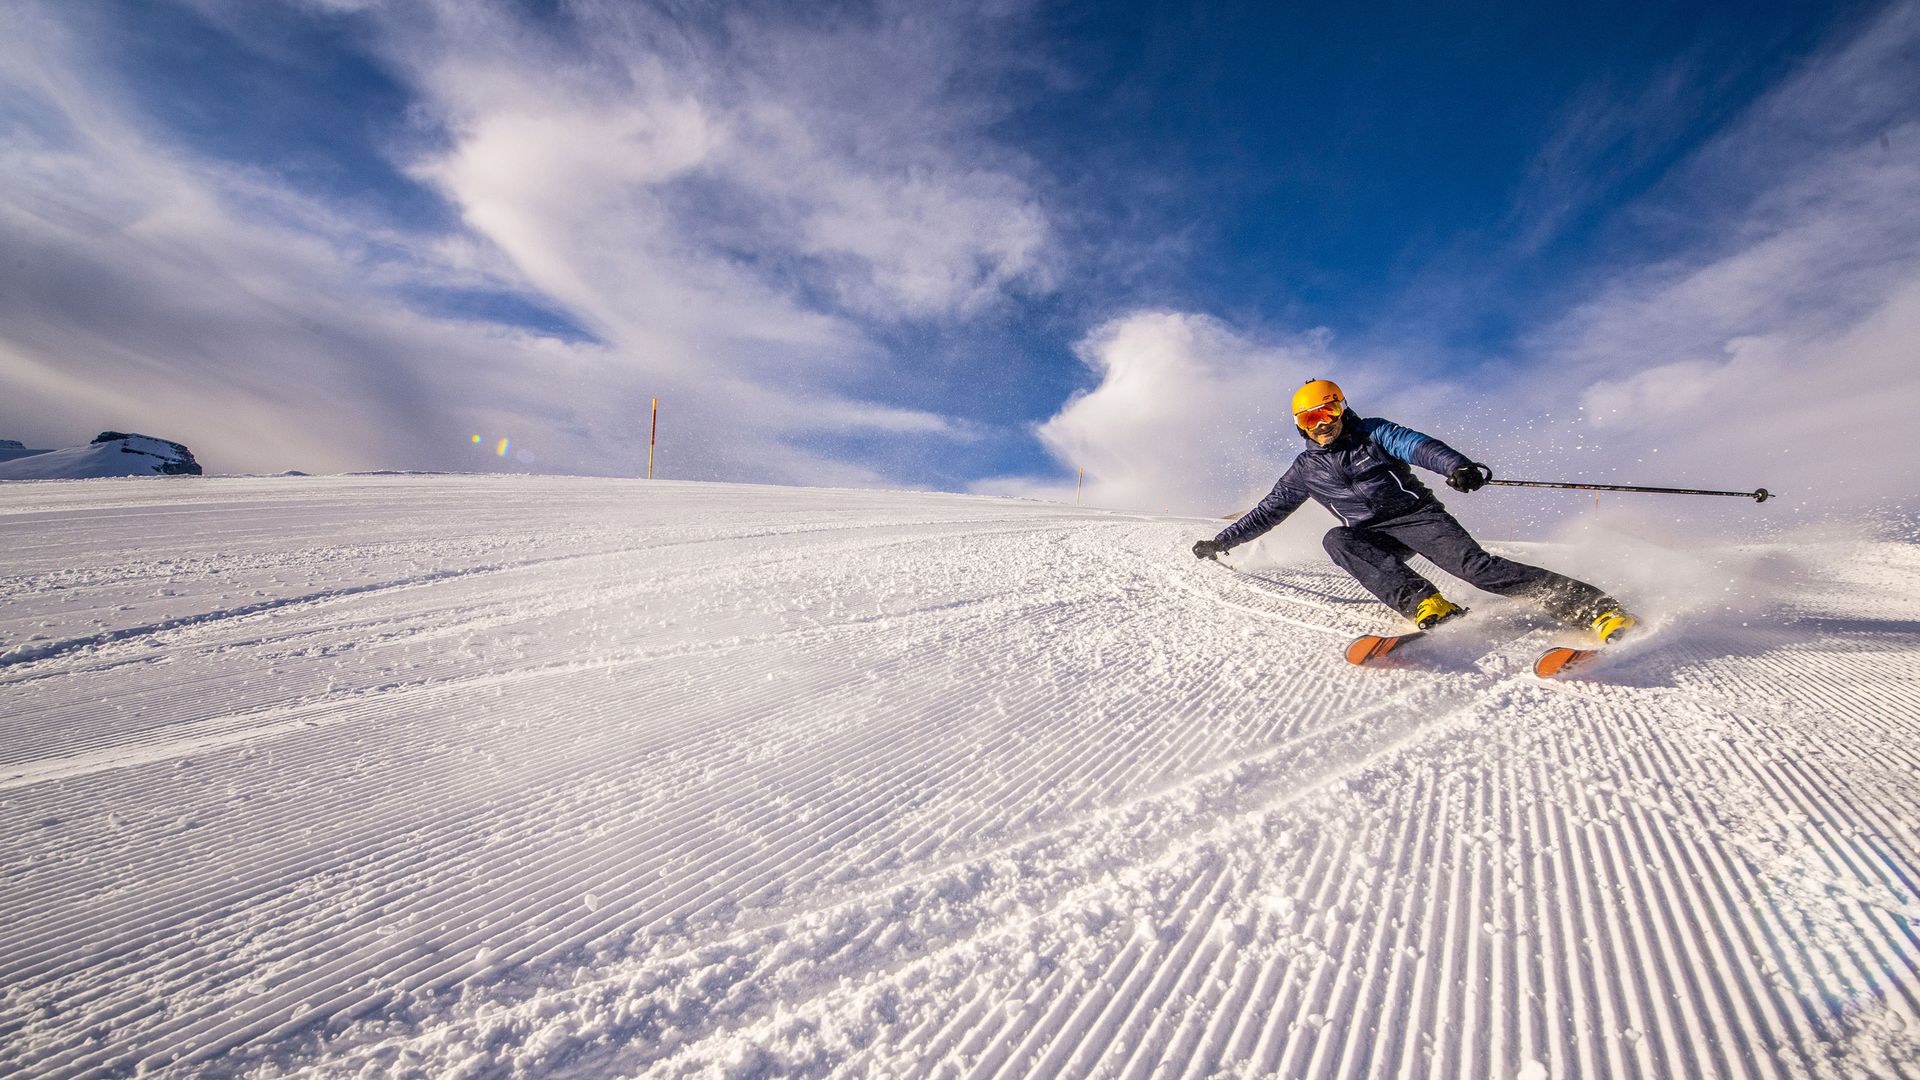 L'immagine mostra uno sciatore su una pista appena battuta. Si appoggia con decisione alla curva e la neve si solleva dietro di lui. 